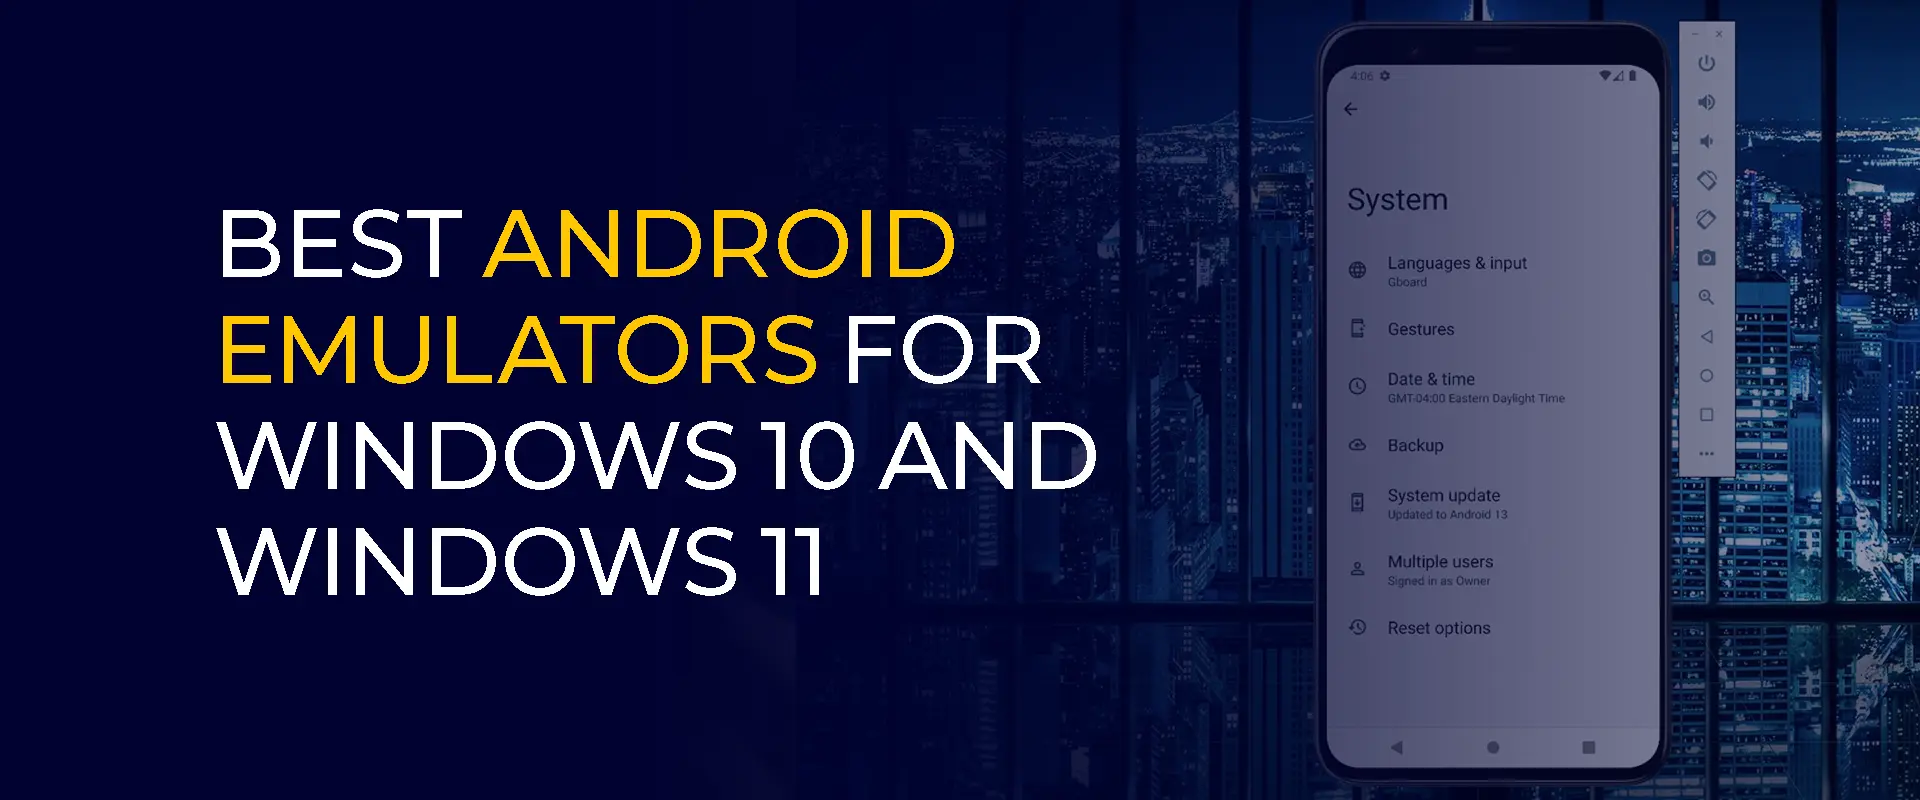 Лучшие эмуляторы Android для Windows 10 и Windows 11